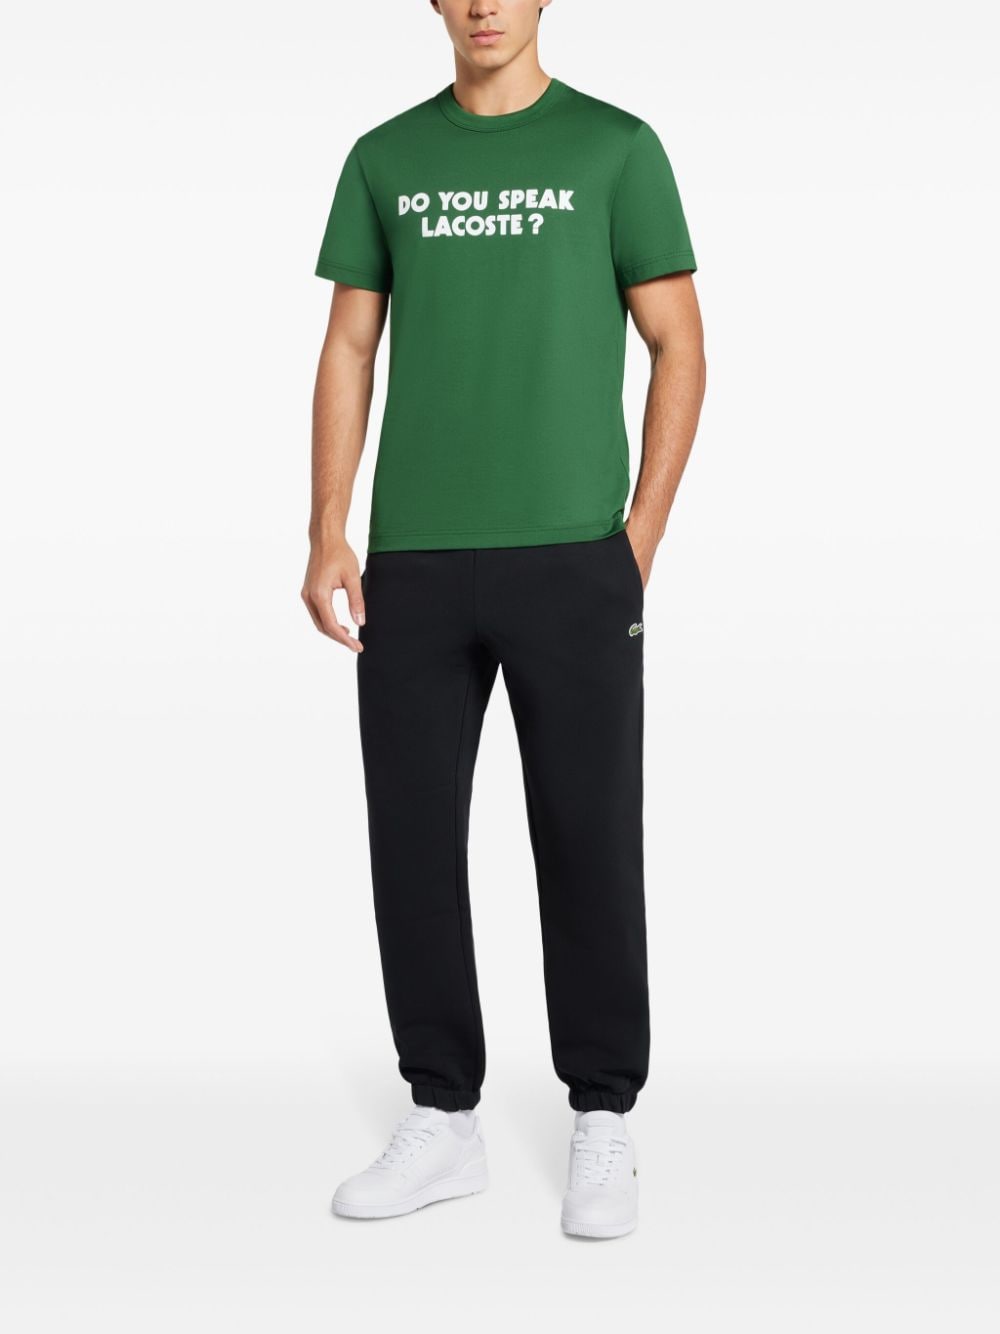 Lacoste T-shirt met tekst - Groen